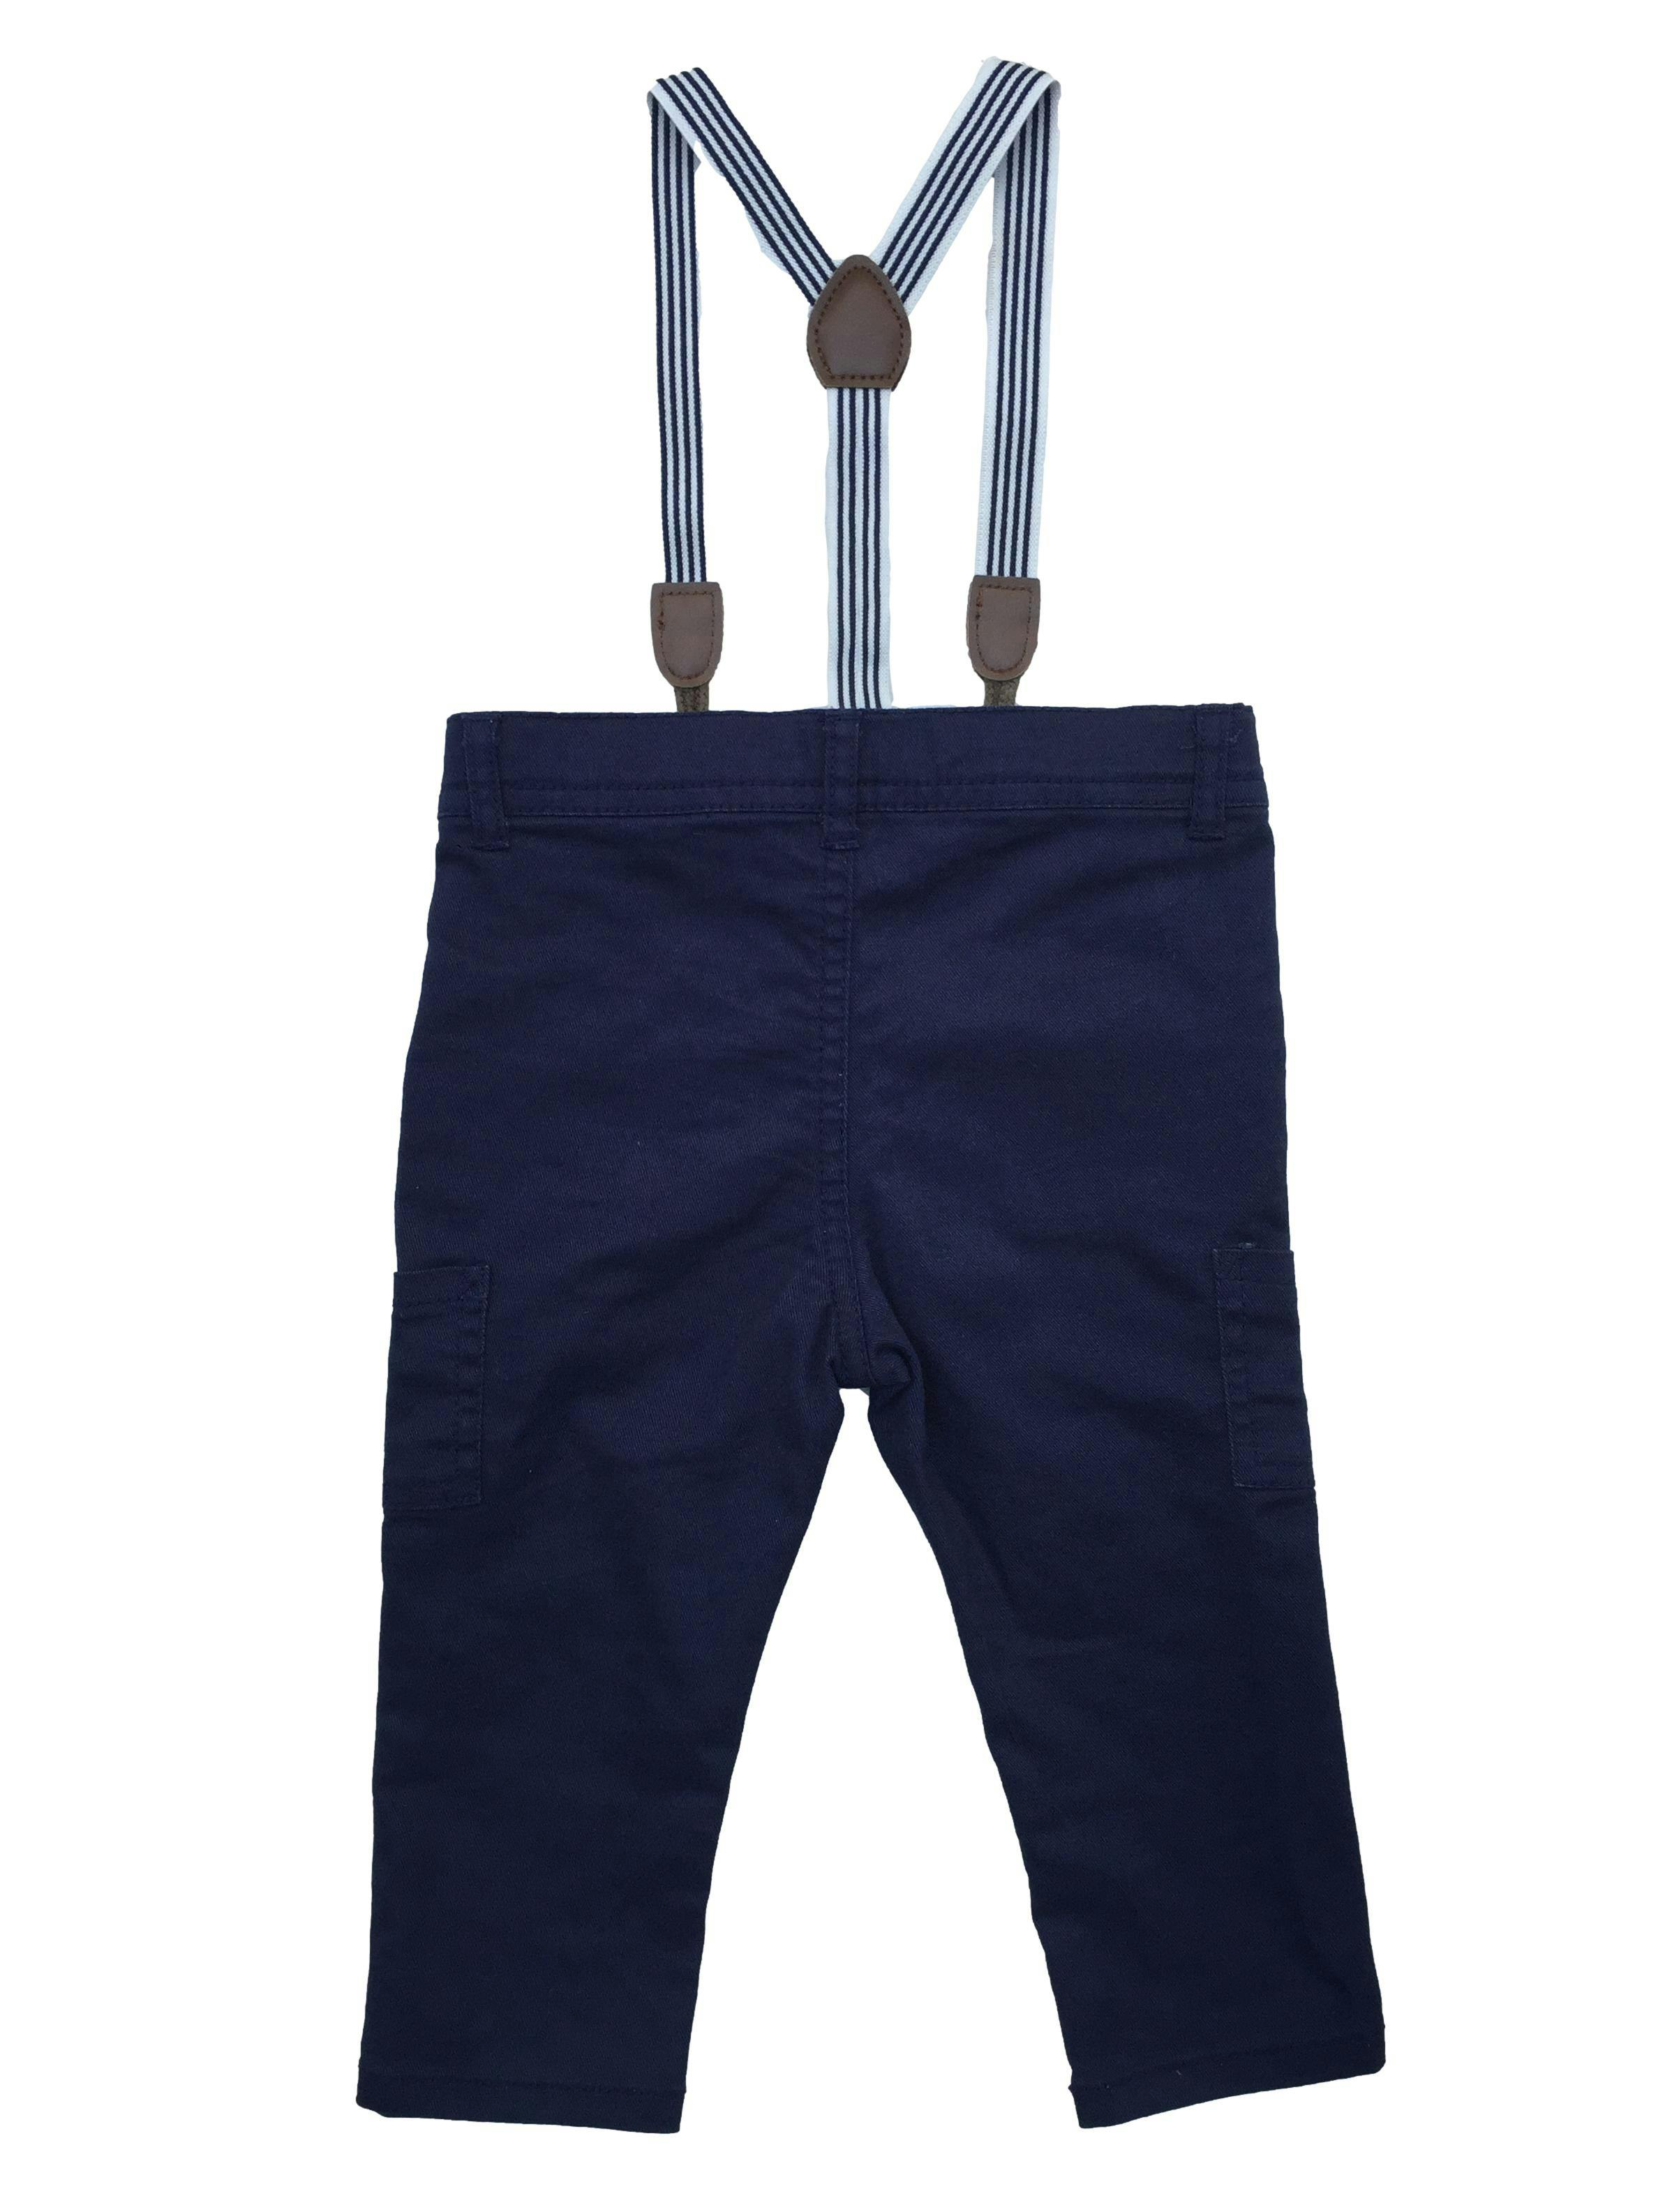 Pantalón Baby Yamp azulino con tirantes removibles.